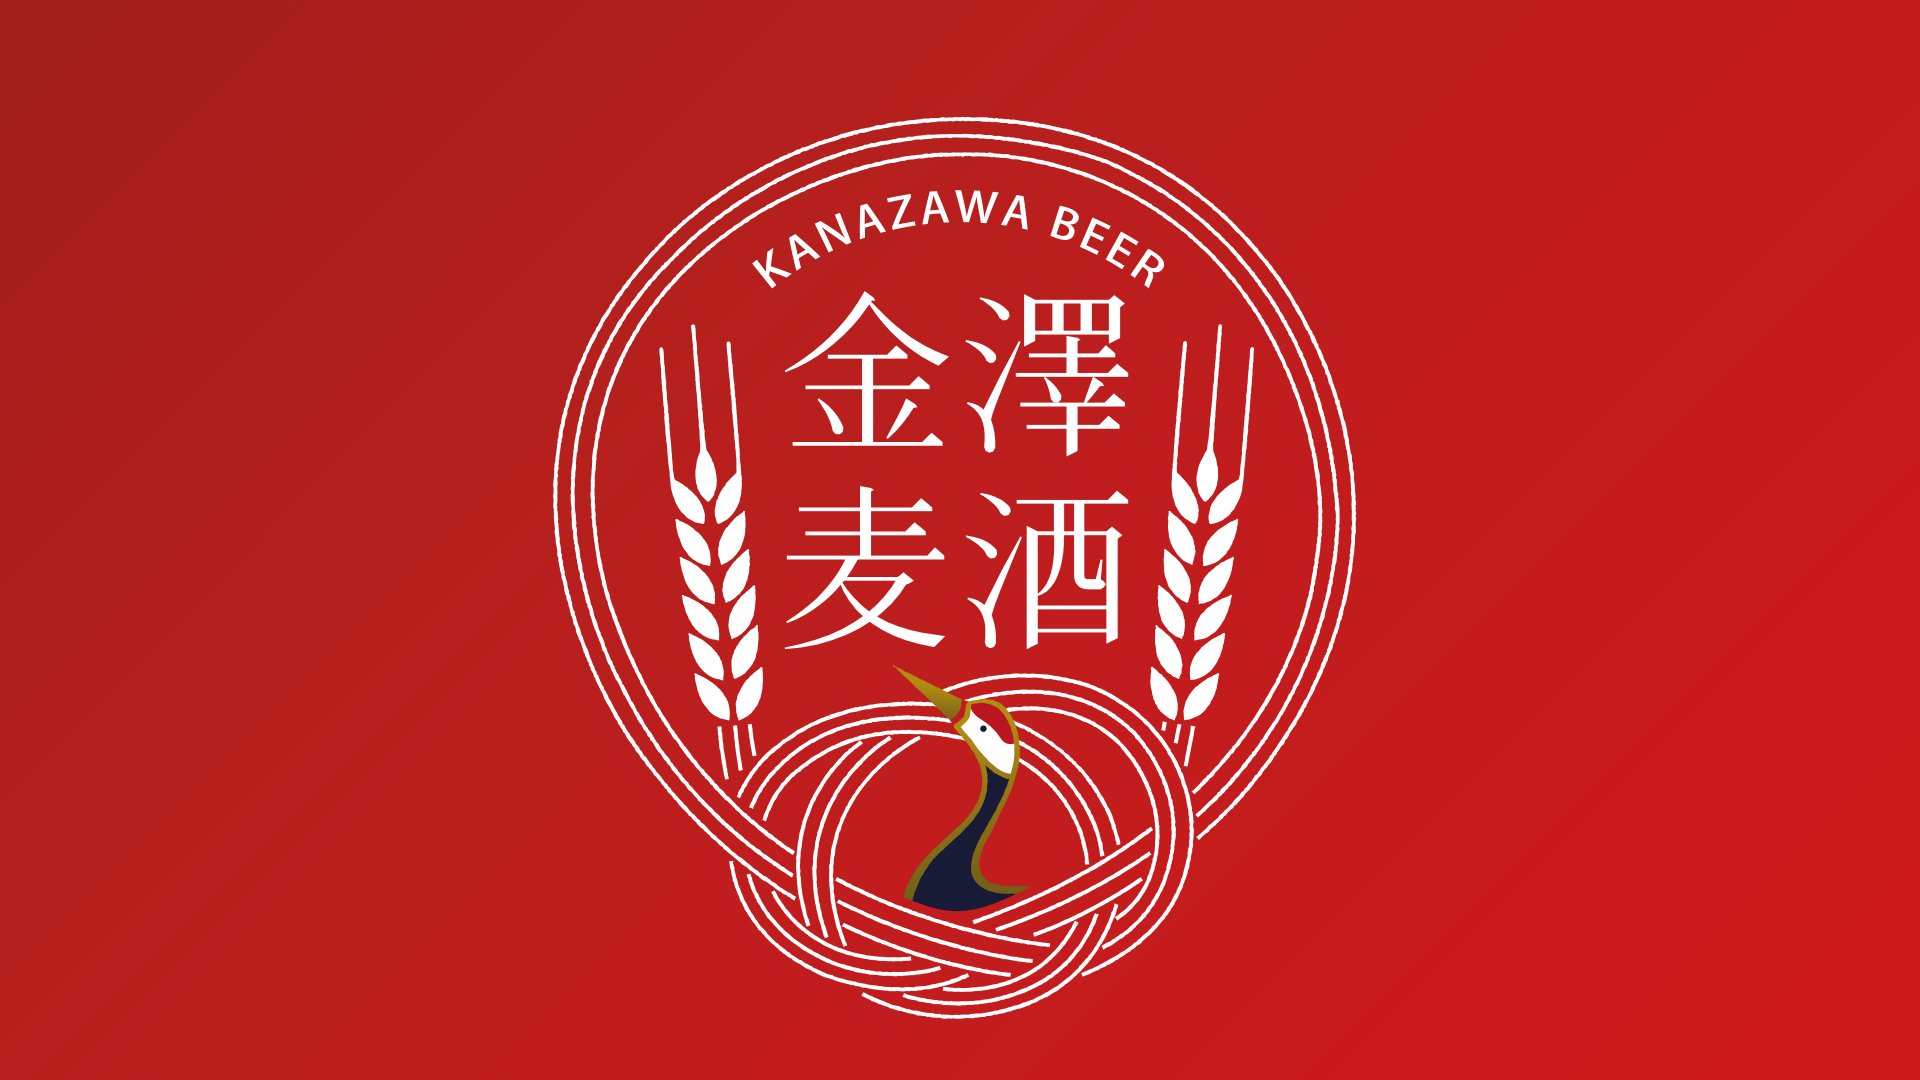 KANAZAWA BREWERY